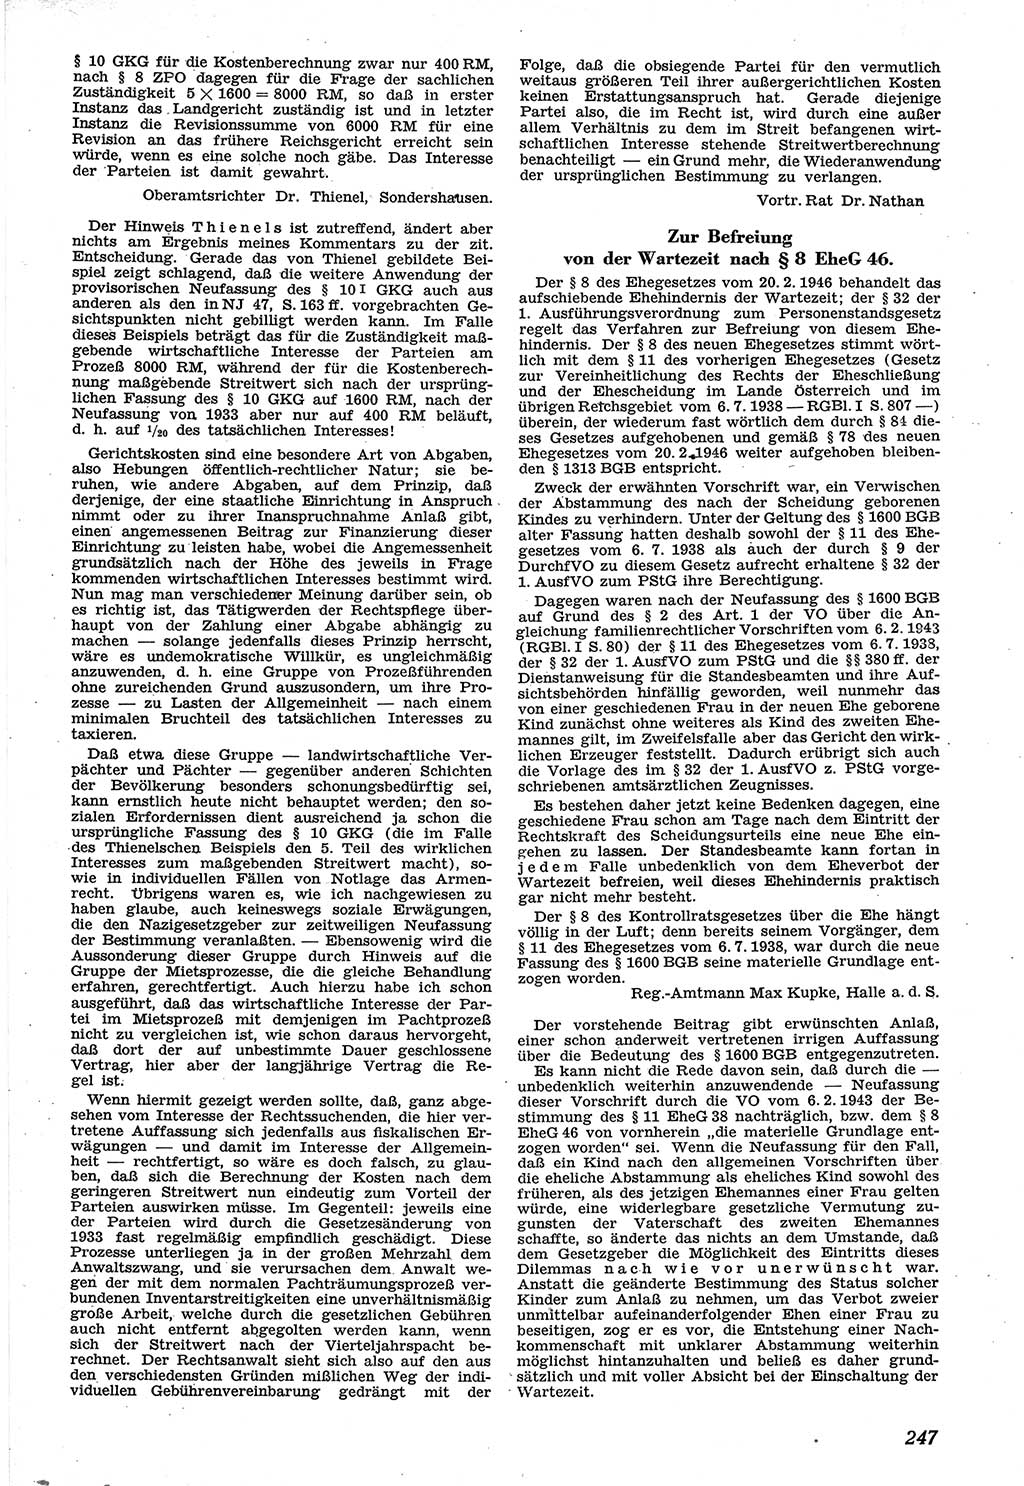 Neue Justiz (NJ), Zeitschrift für Recht und Rechtswissenschaft [Sowjetische Besatzungszone (SBZ) Deutschland], 1. Jahrgang 1947, Seite 247 (NJ SBZ Dtl. 1947, S. 247)